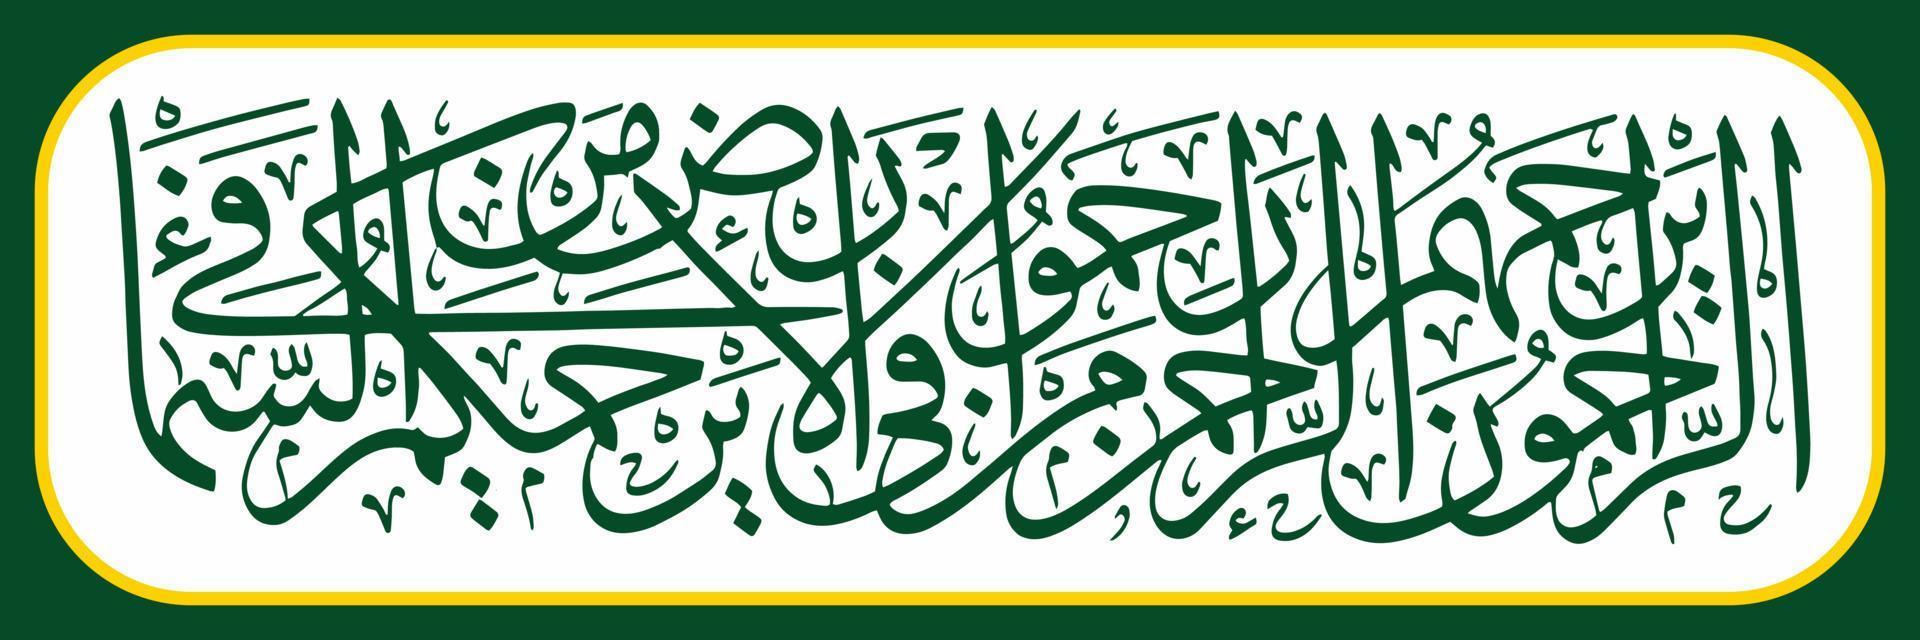 arabicum kalligrafi, översättning de där vem är barmhärtig, kommer vara älskade förbi Allah, de rahman. därför, kärlek Allt varelser på jorden, säkert Allt varelser i de himmel kommer kärlek du Allt vektor